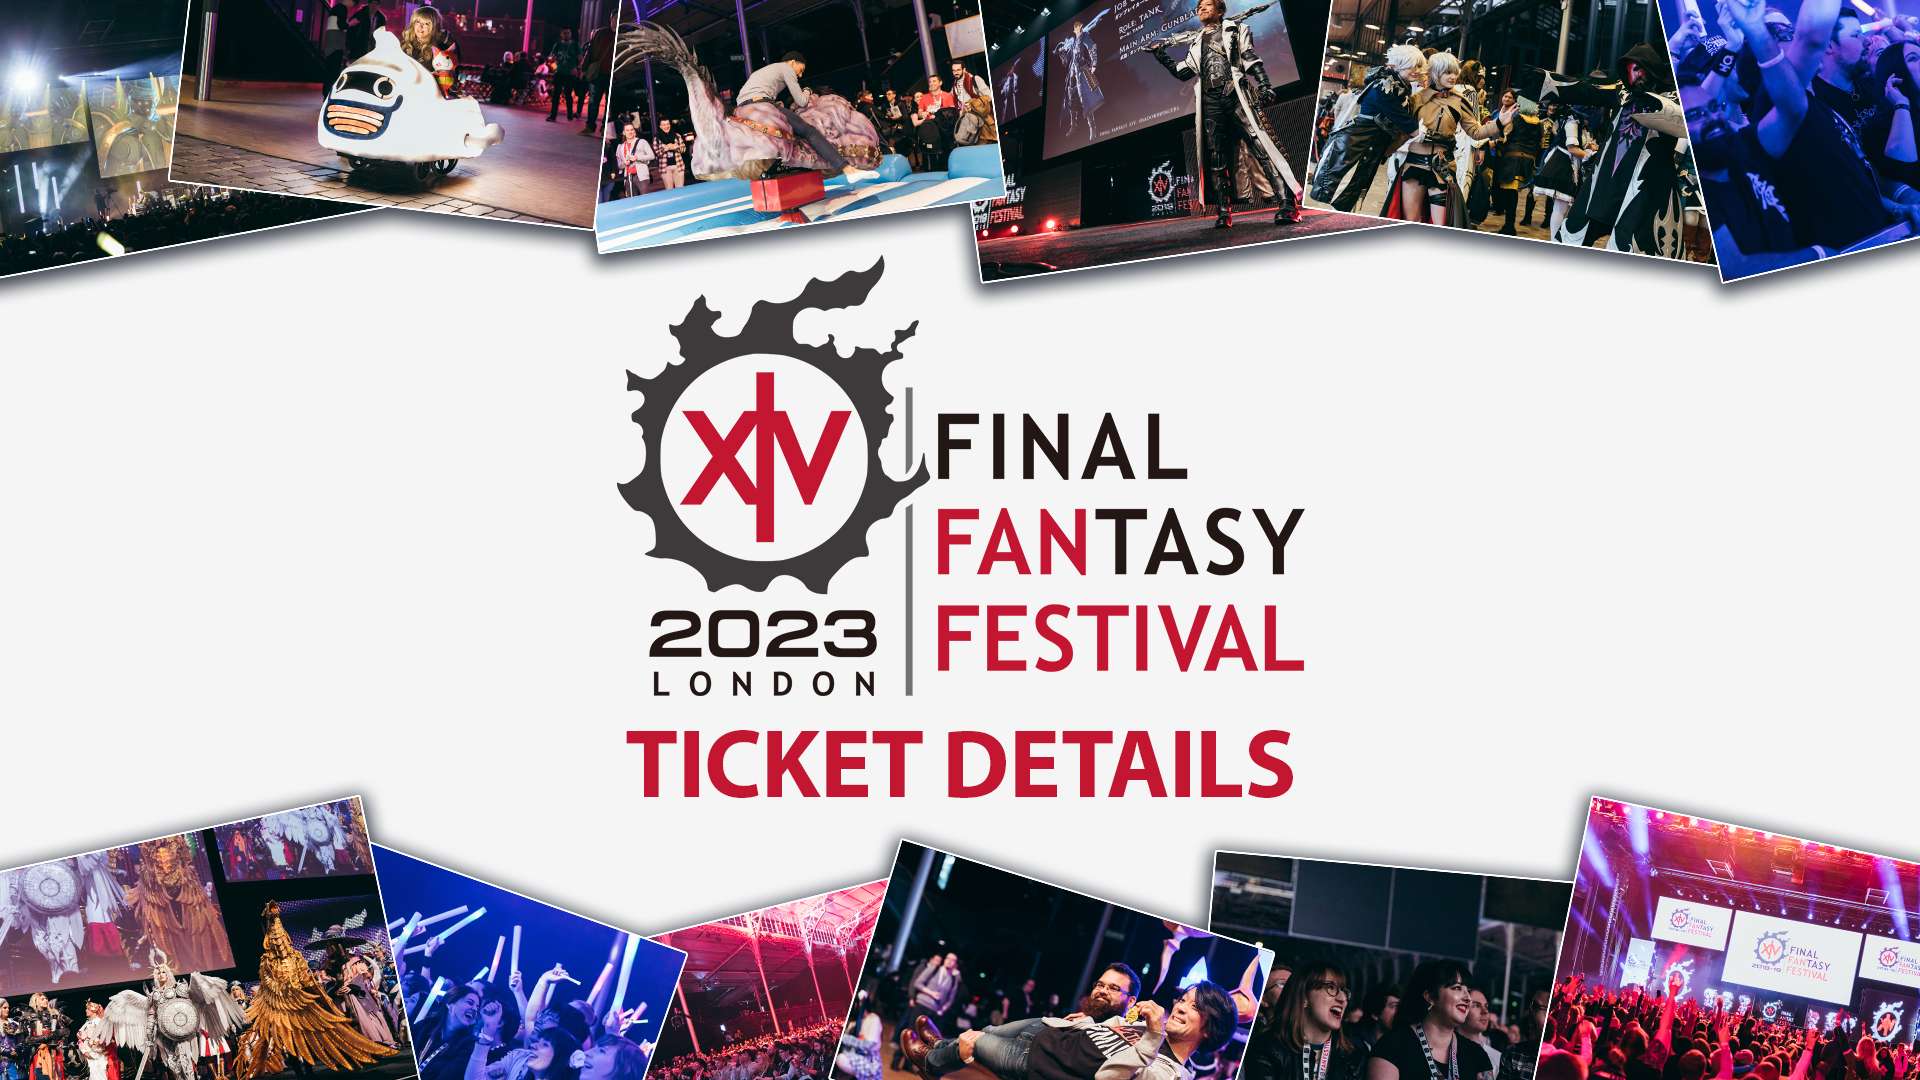 Fan Festival 2023 in London logo with 